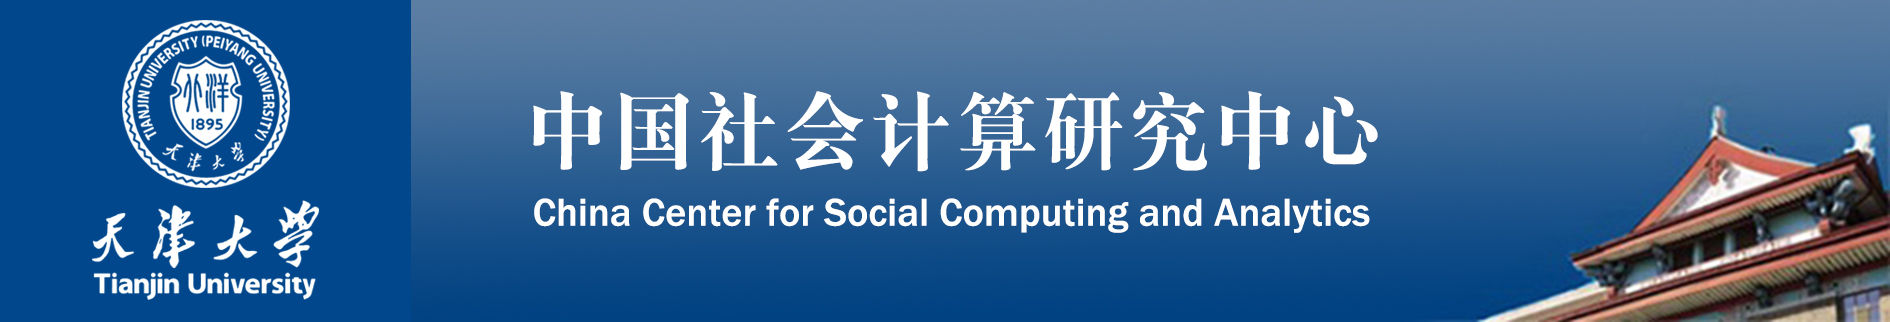 中国社会计算研究中心